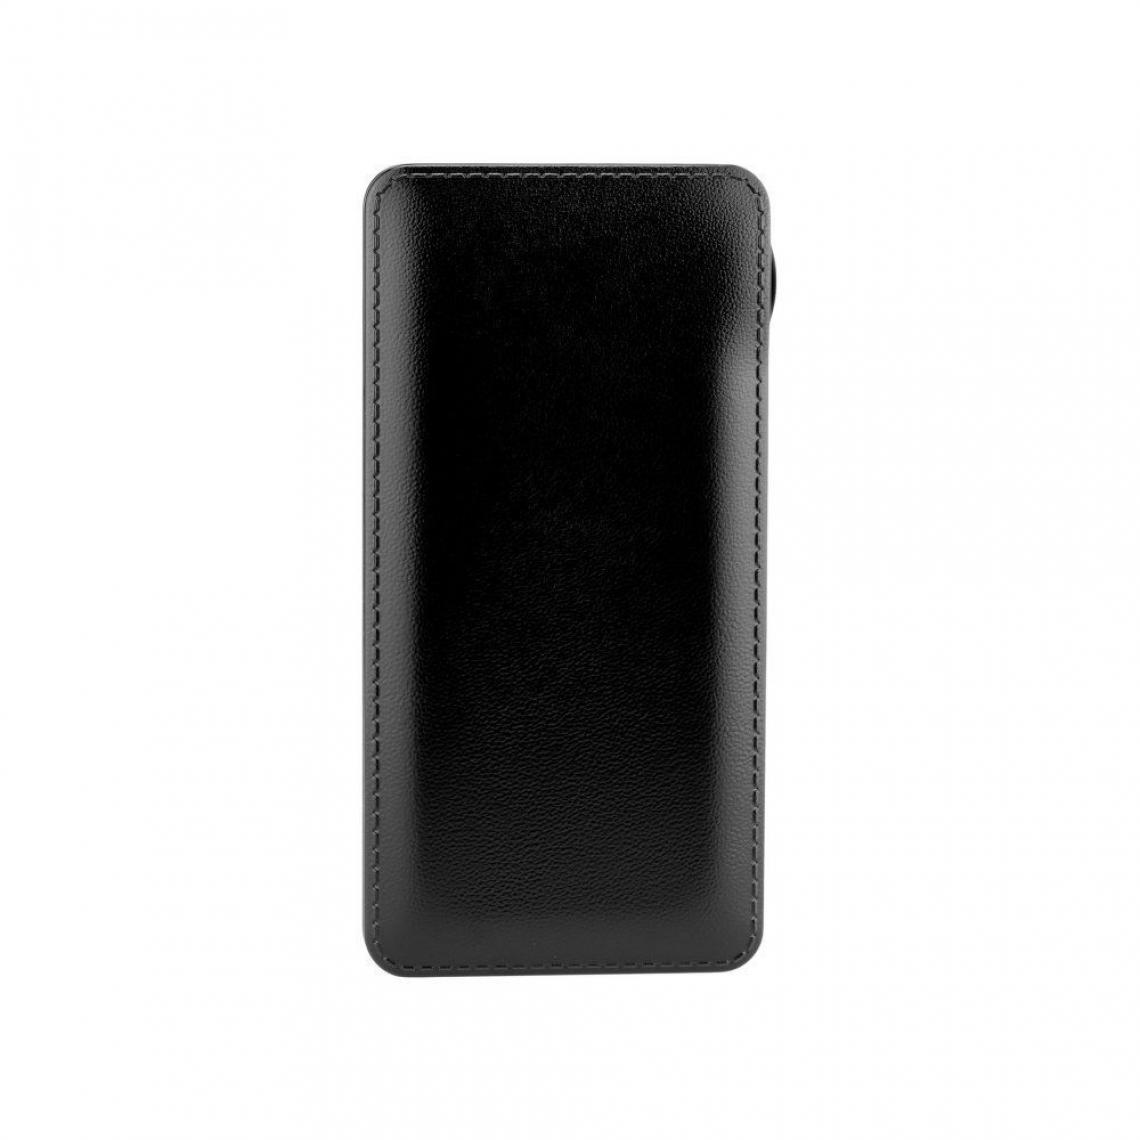 Ozzzo - Chargeur batterie externe 20000 mAh powerbank ozzzo noir pour Huawei Honor Play 8 - Autres accessoires smartphone